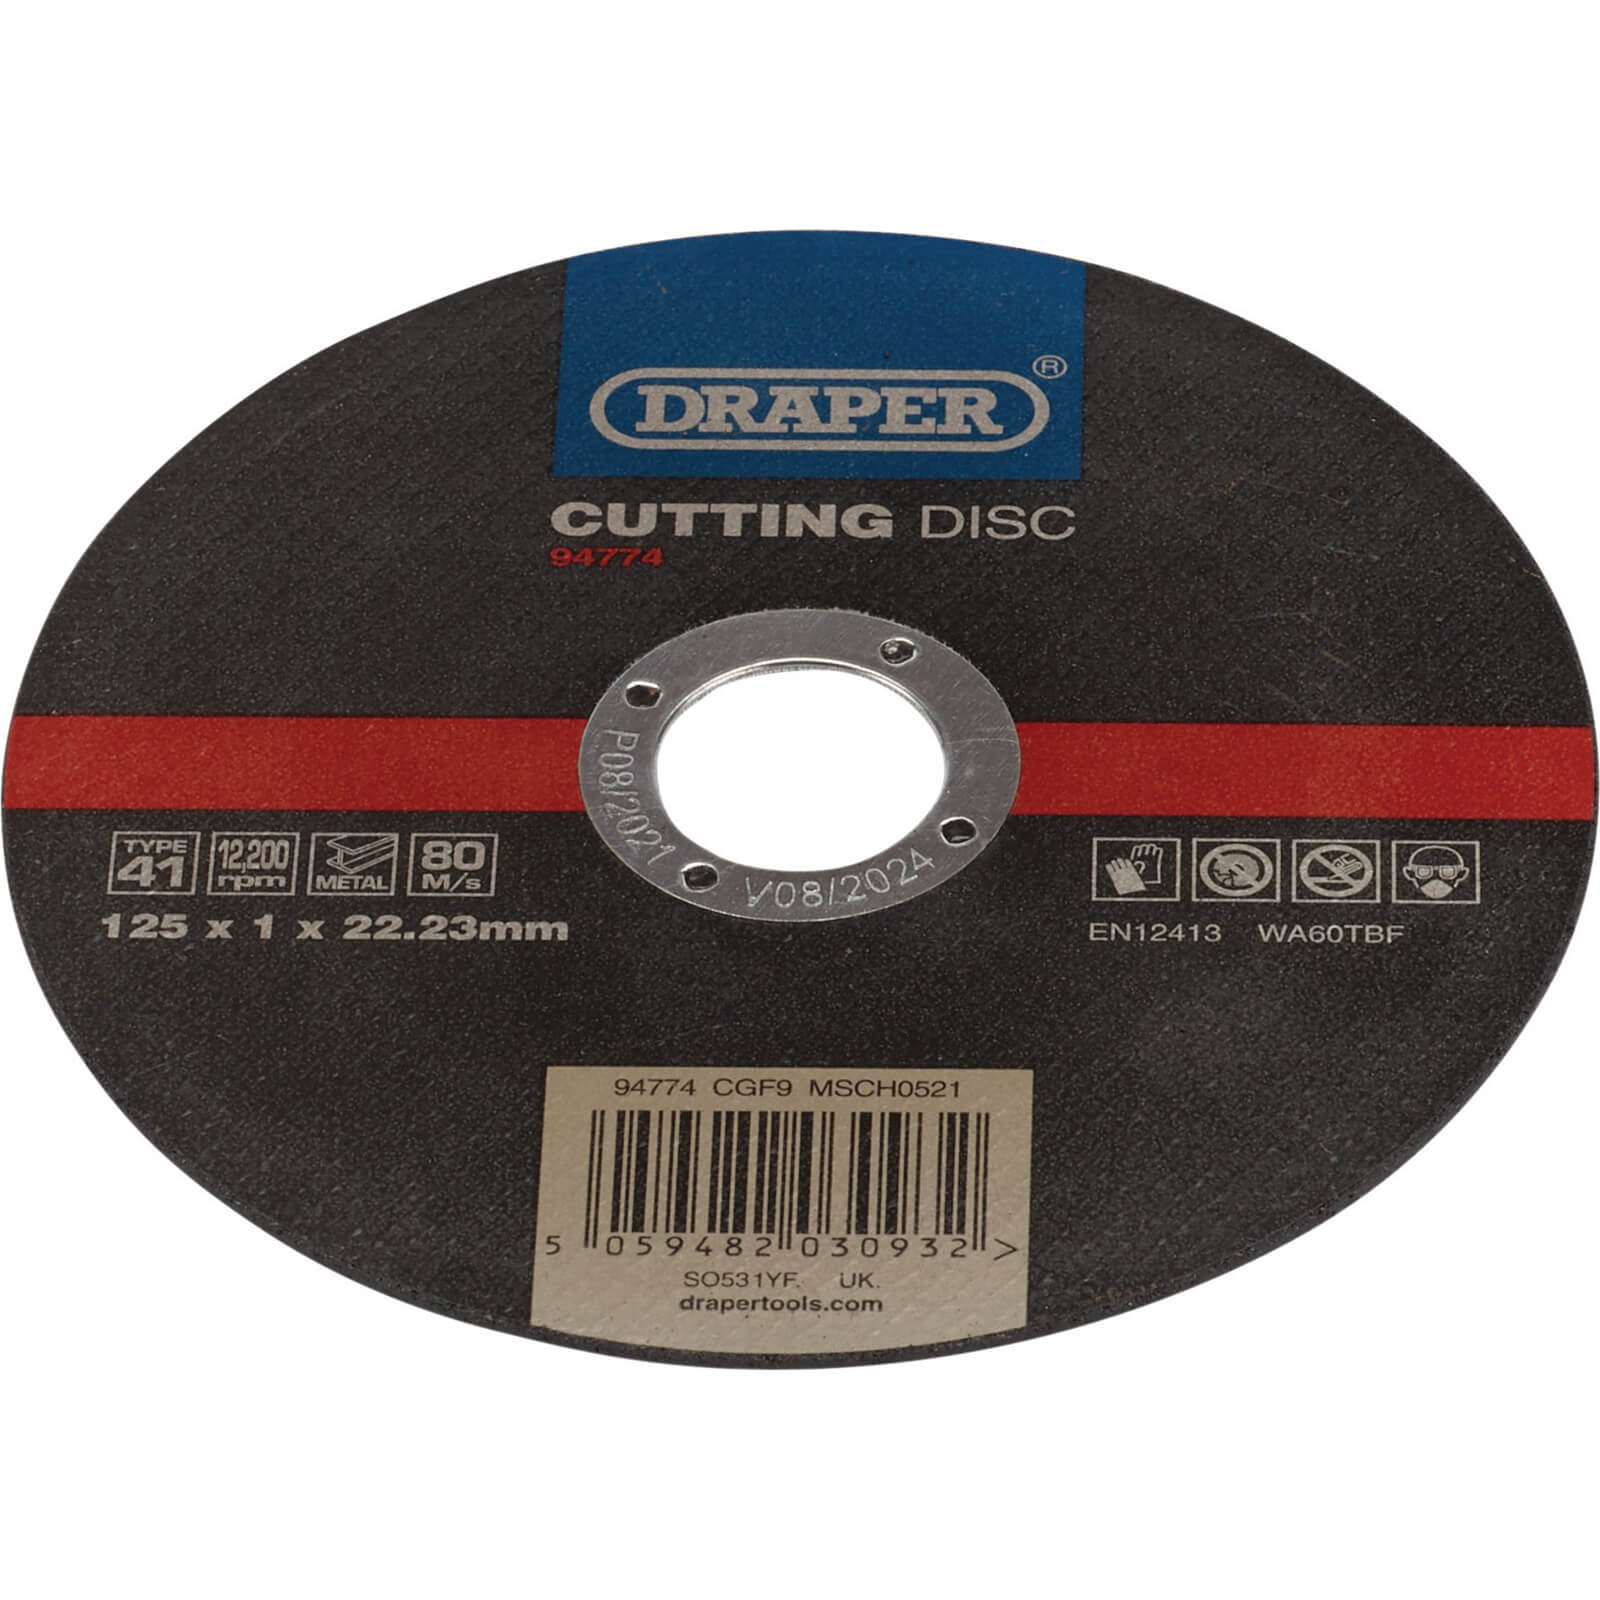 Draper Metal Cutting Disc 125mm 1mm 22mm